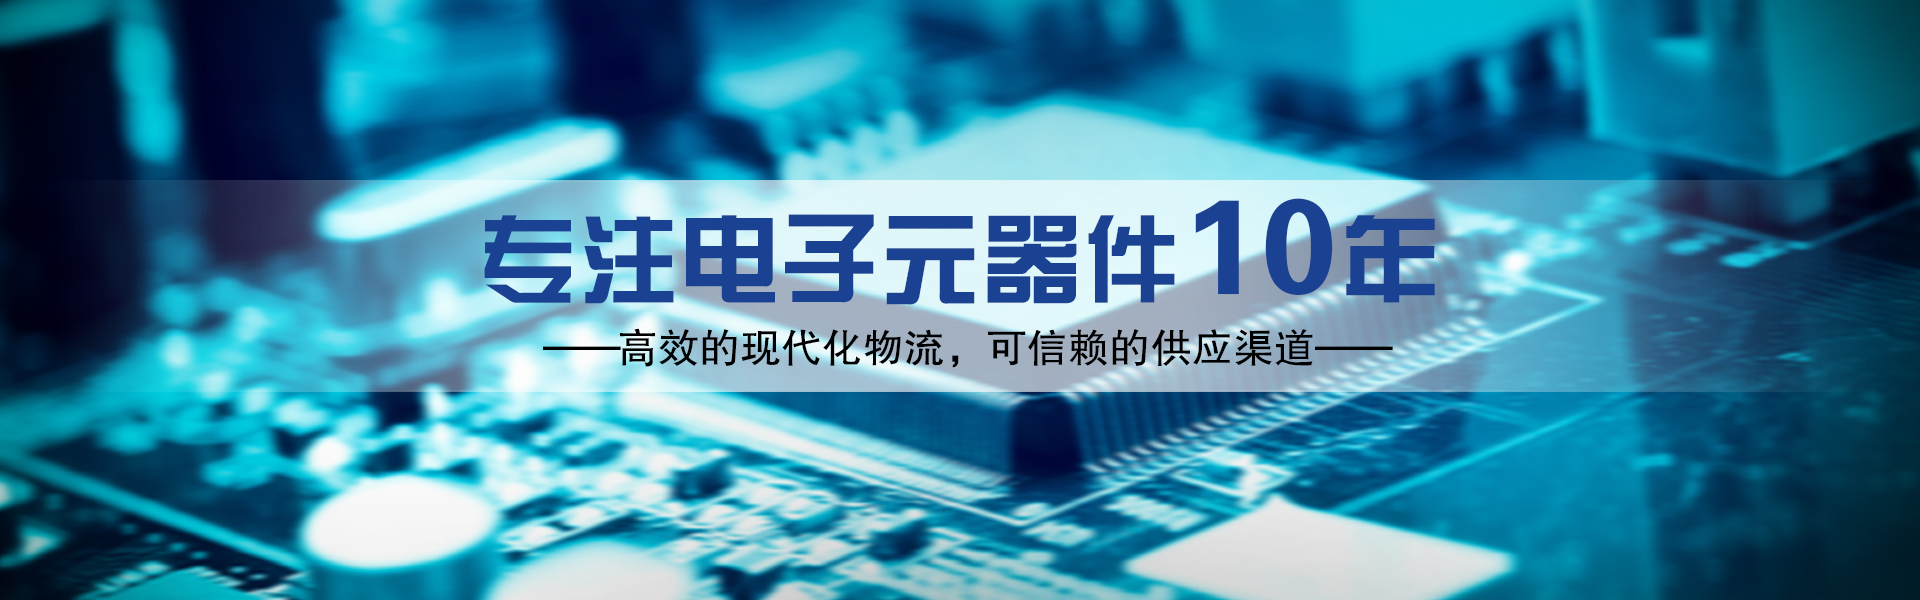 日本tdk授权中国国内一级代理商，TDK原装正品，TDK原厂正规渠道，提供TDK电容代理、TDK电感代理、TDK磁珠代理、TDK电阻代理、TDK滤波器代理